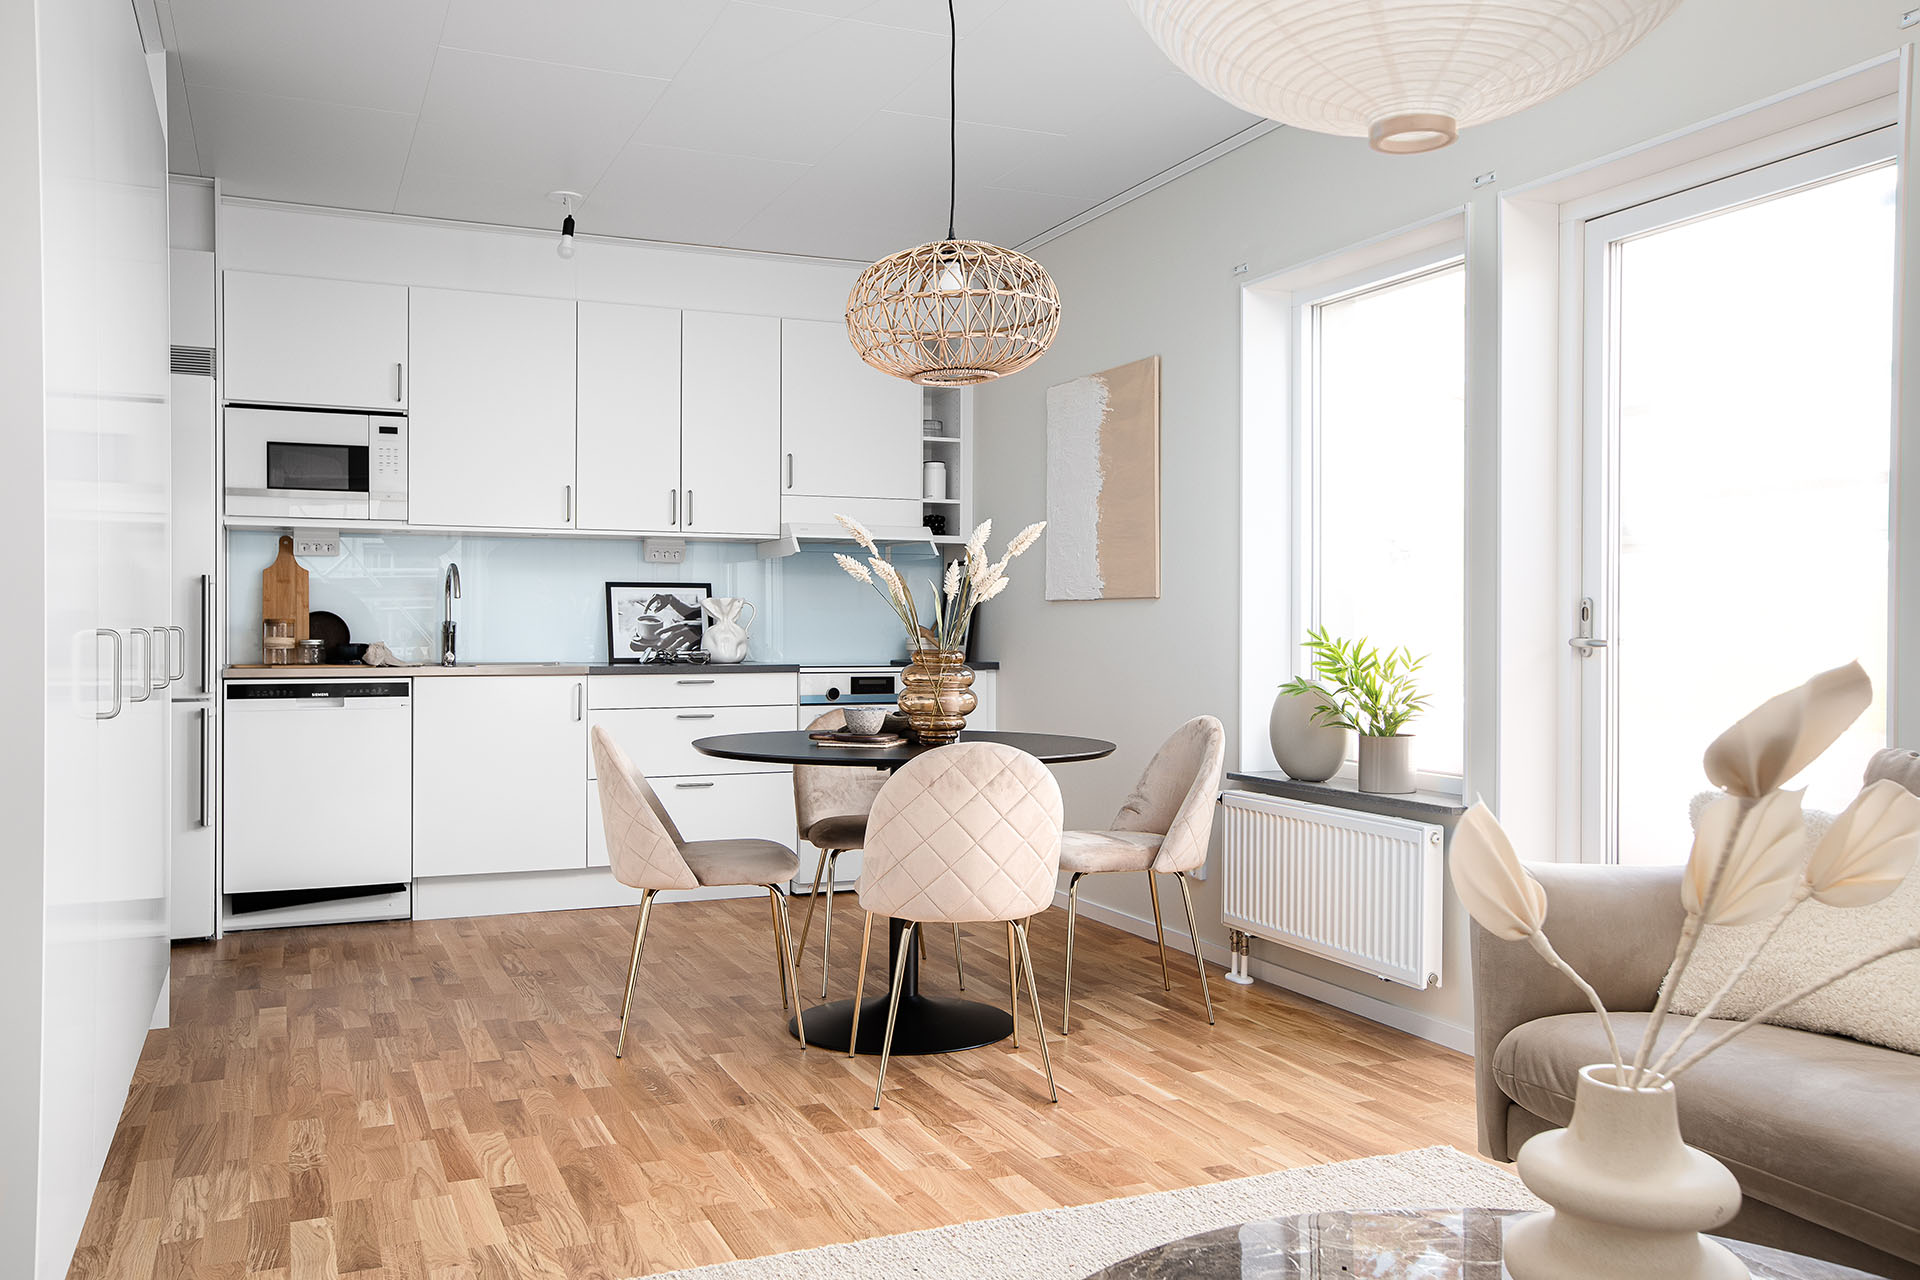 Ett vitt kök och kombinerat vardagsrum. Köket har vita skåpluckor och på det ljusa trägolvet står det ett runt köksbord med tygstolar runt om.